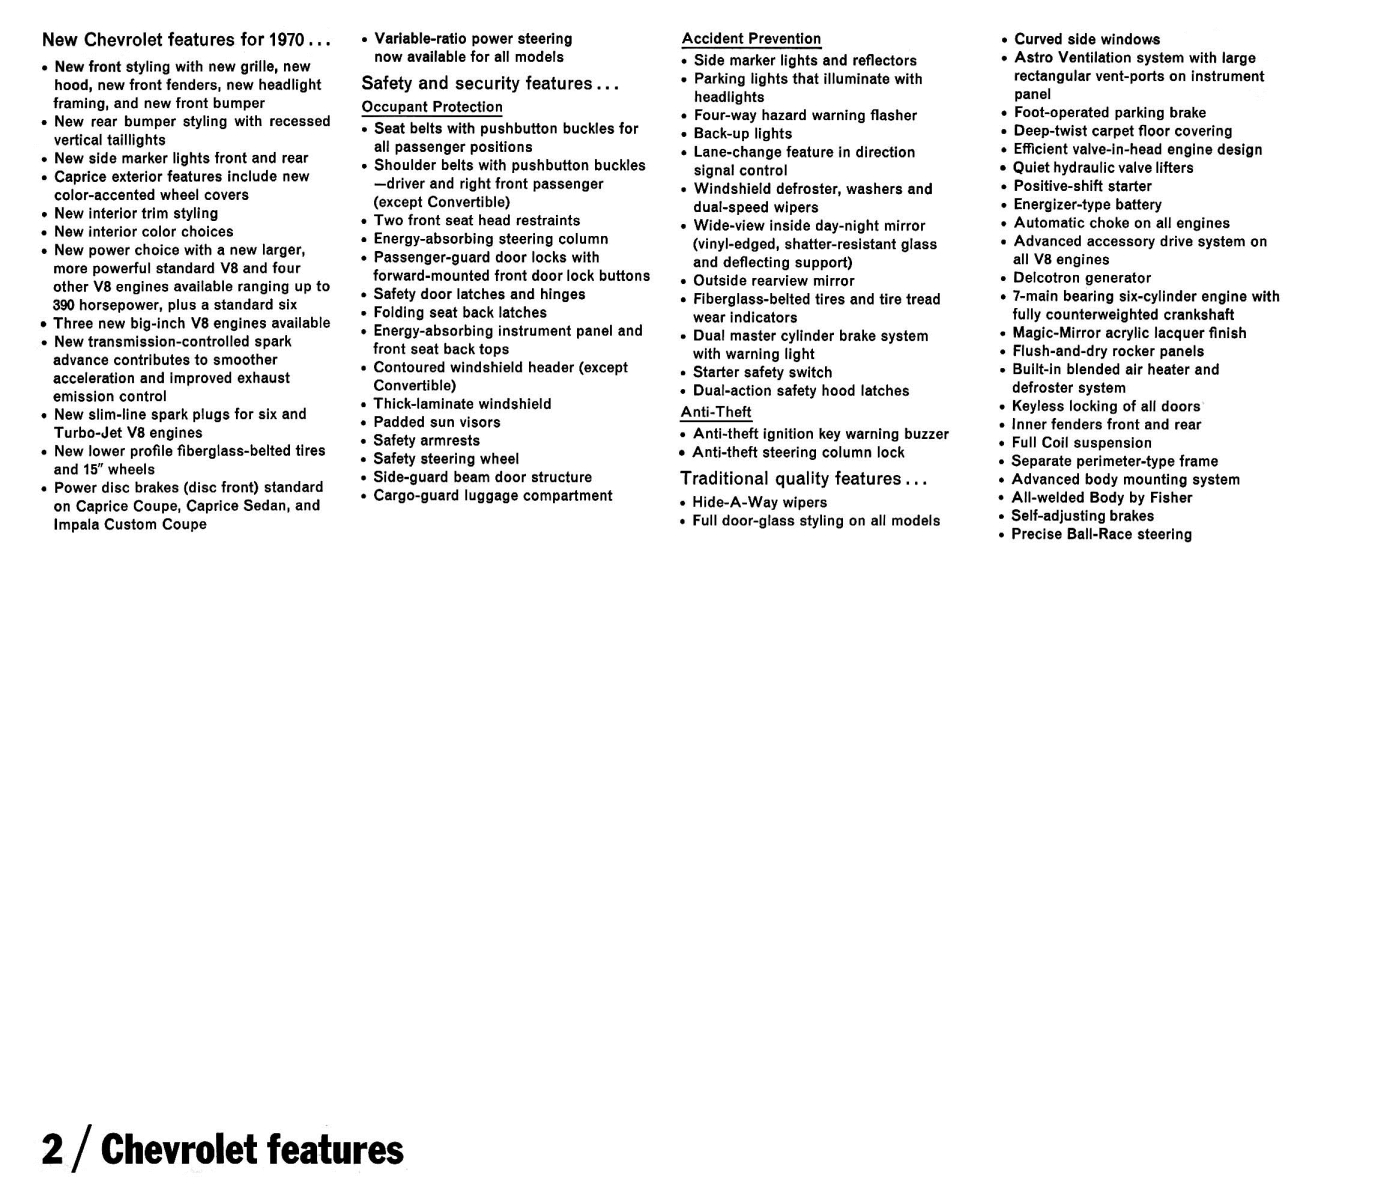 1970_Chevrolet_Dealer_Album-01-02